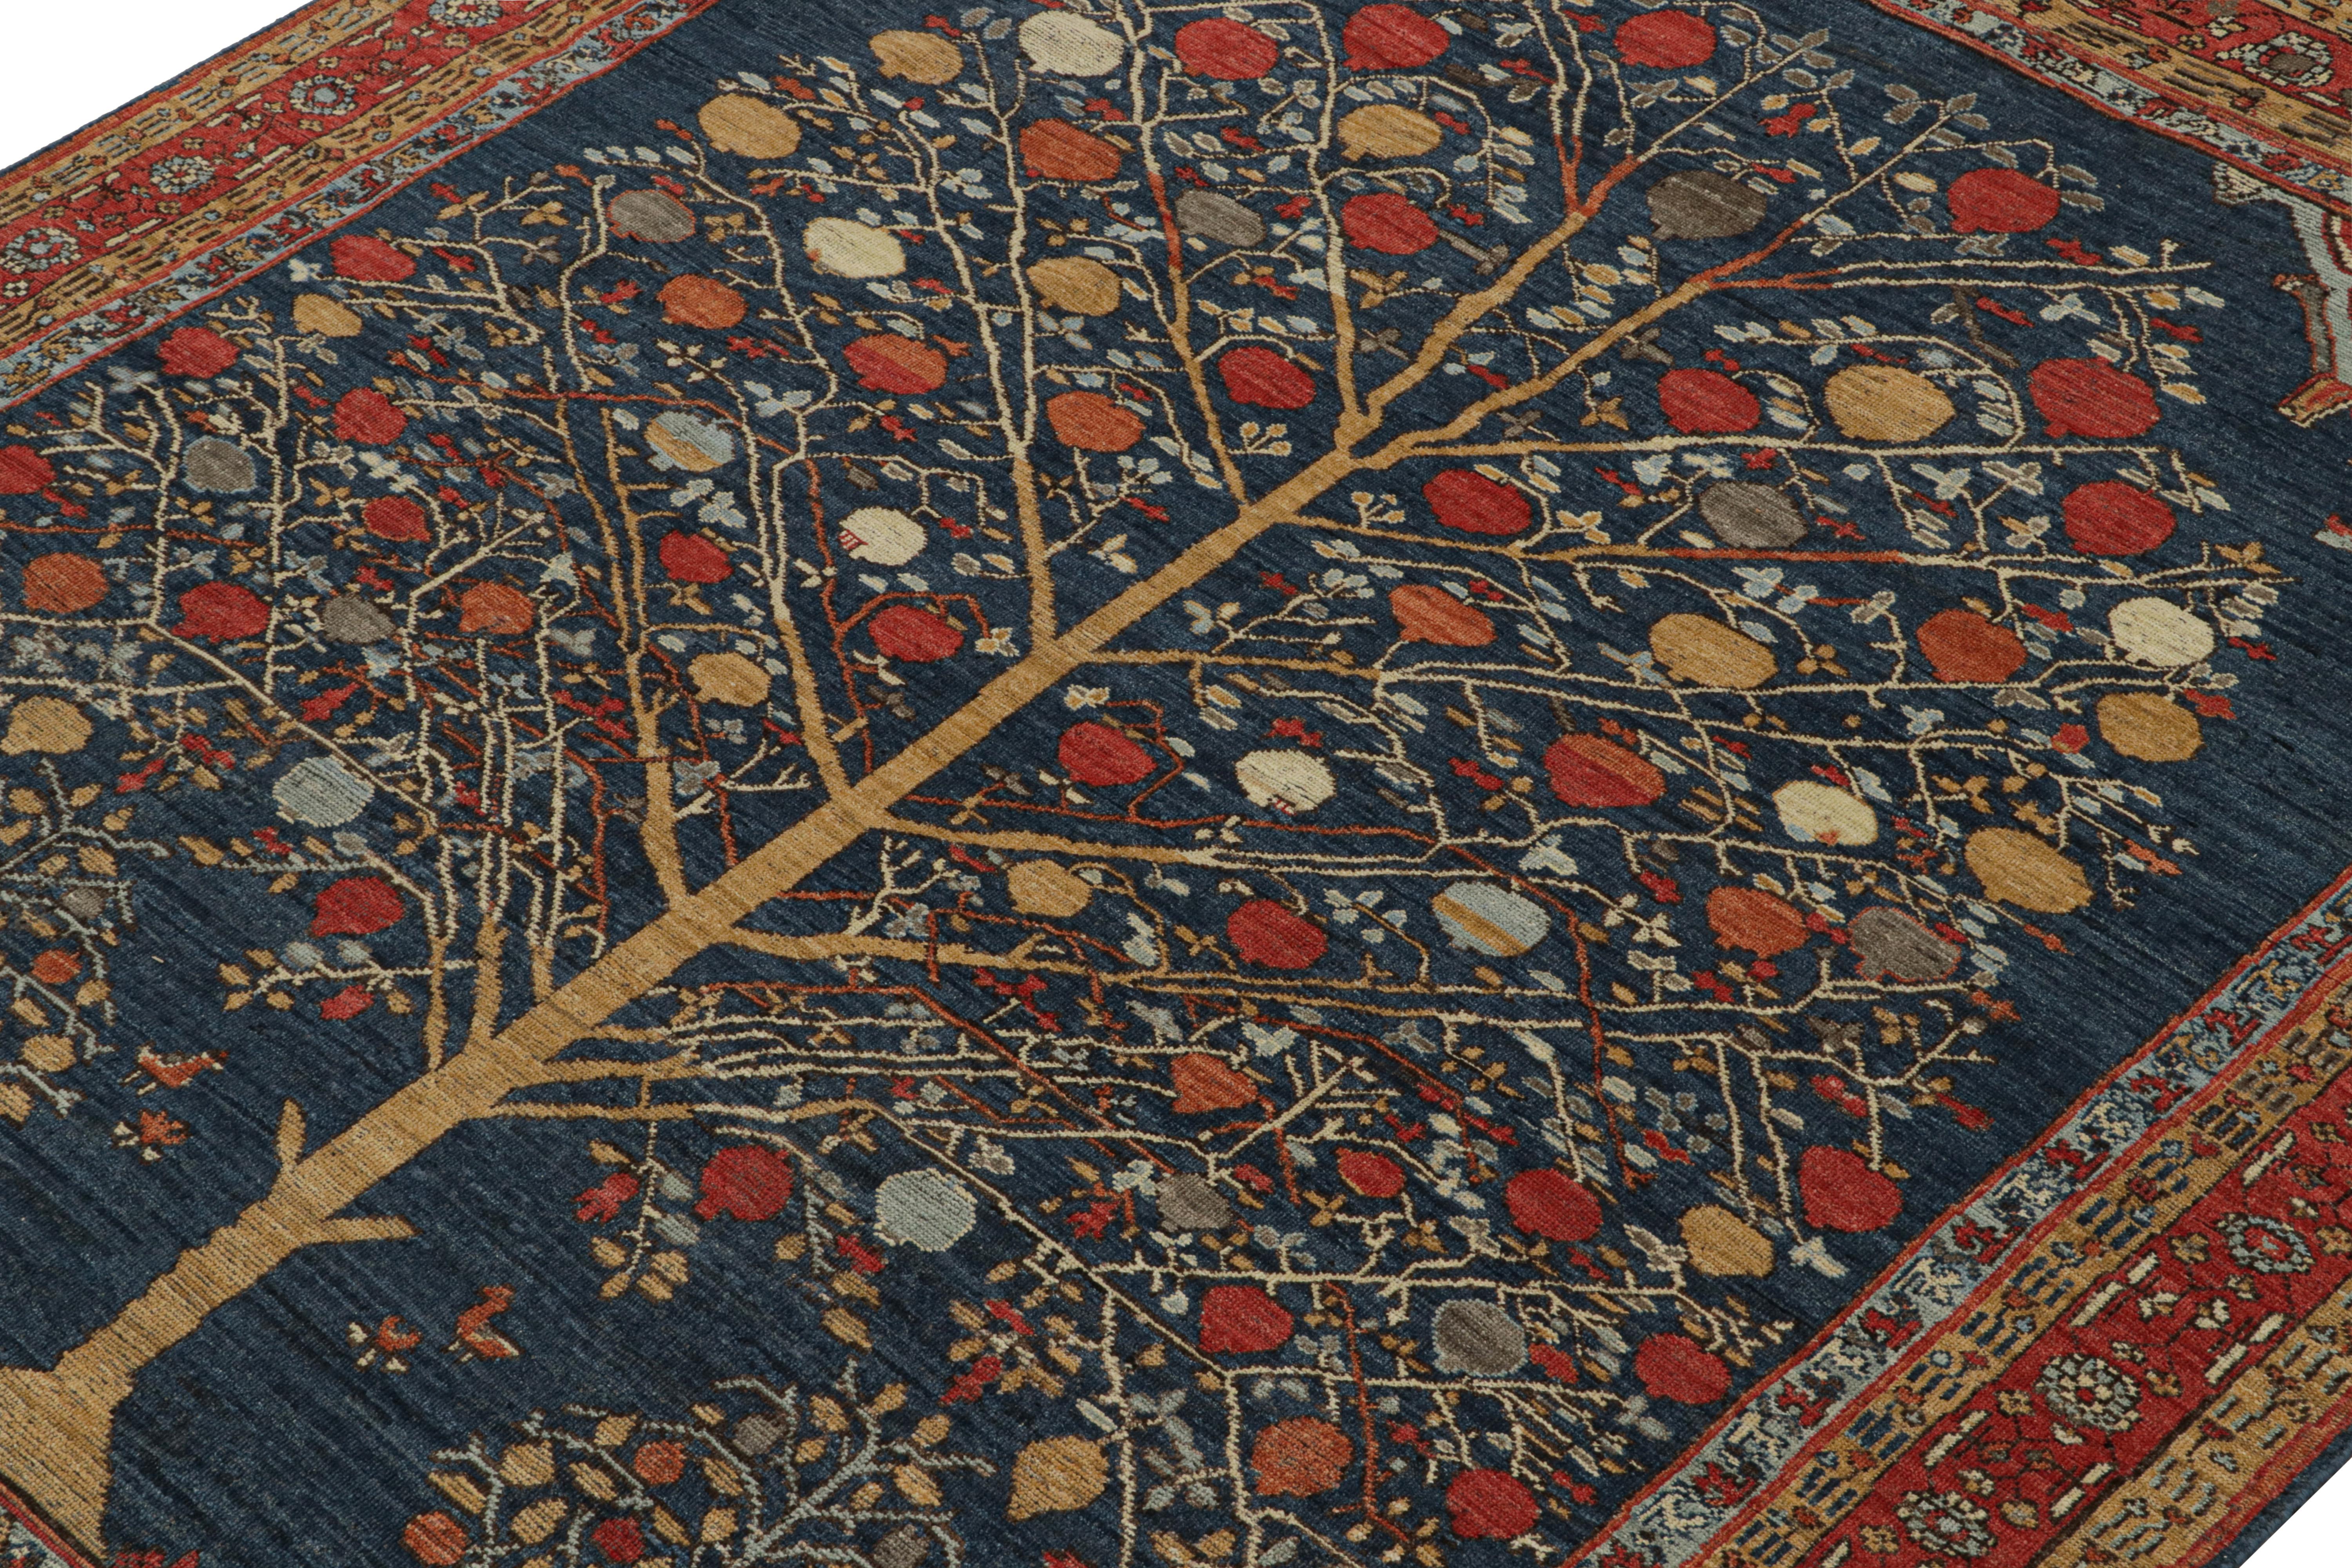 Ce tapis 8x10 est un nouvel ajout à la Collection Burano de Rug & Kilim. Noué à la main en laine, son design explore l'esthétique des tapis tribaux dans une qualité moderne et rafraîchissante.

Sur le Design : 

Le motif s'inspire des tapis persans